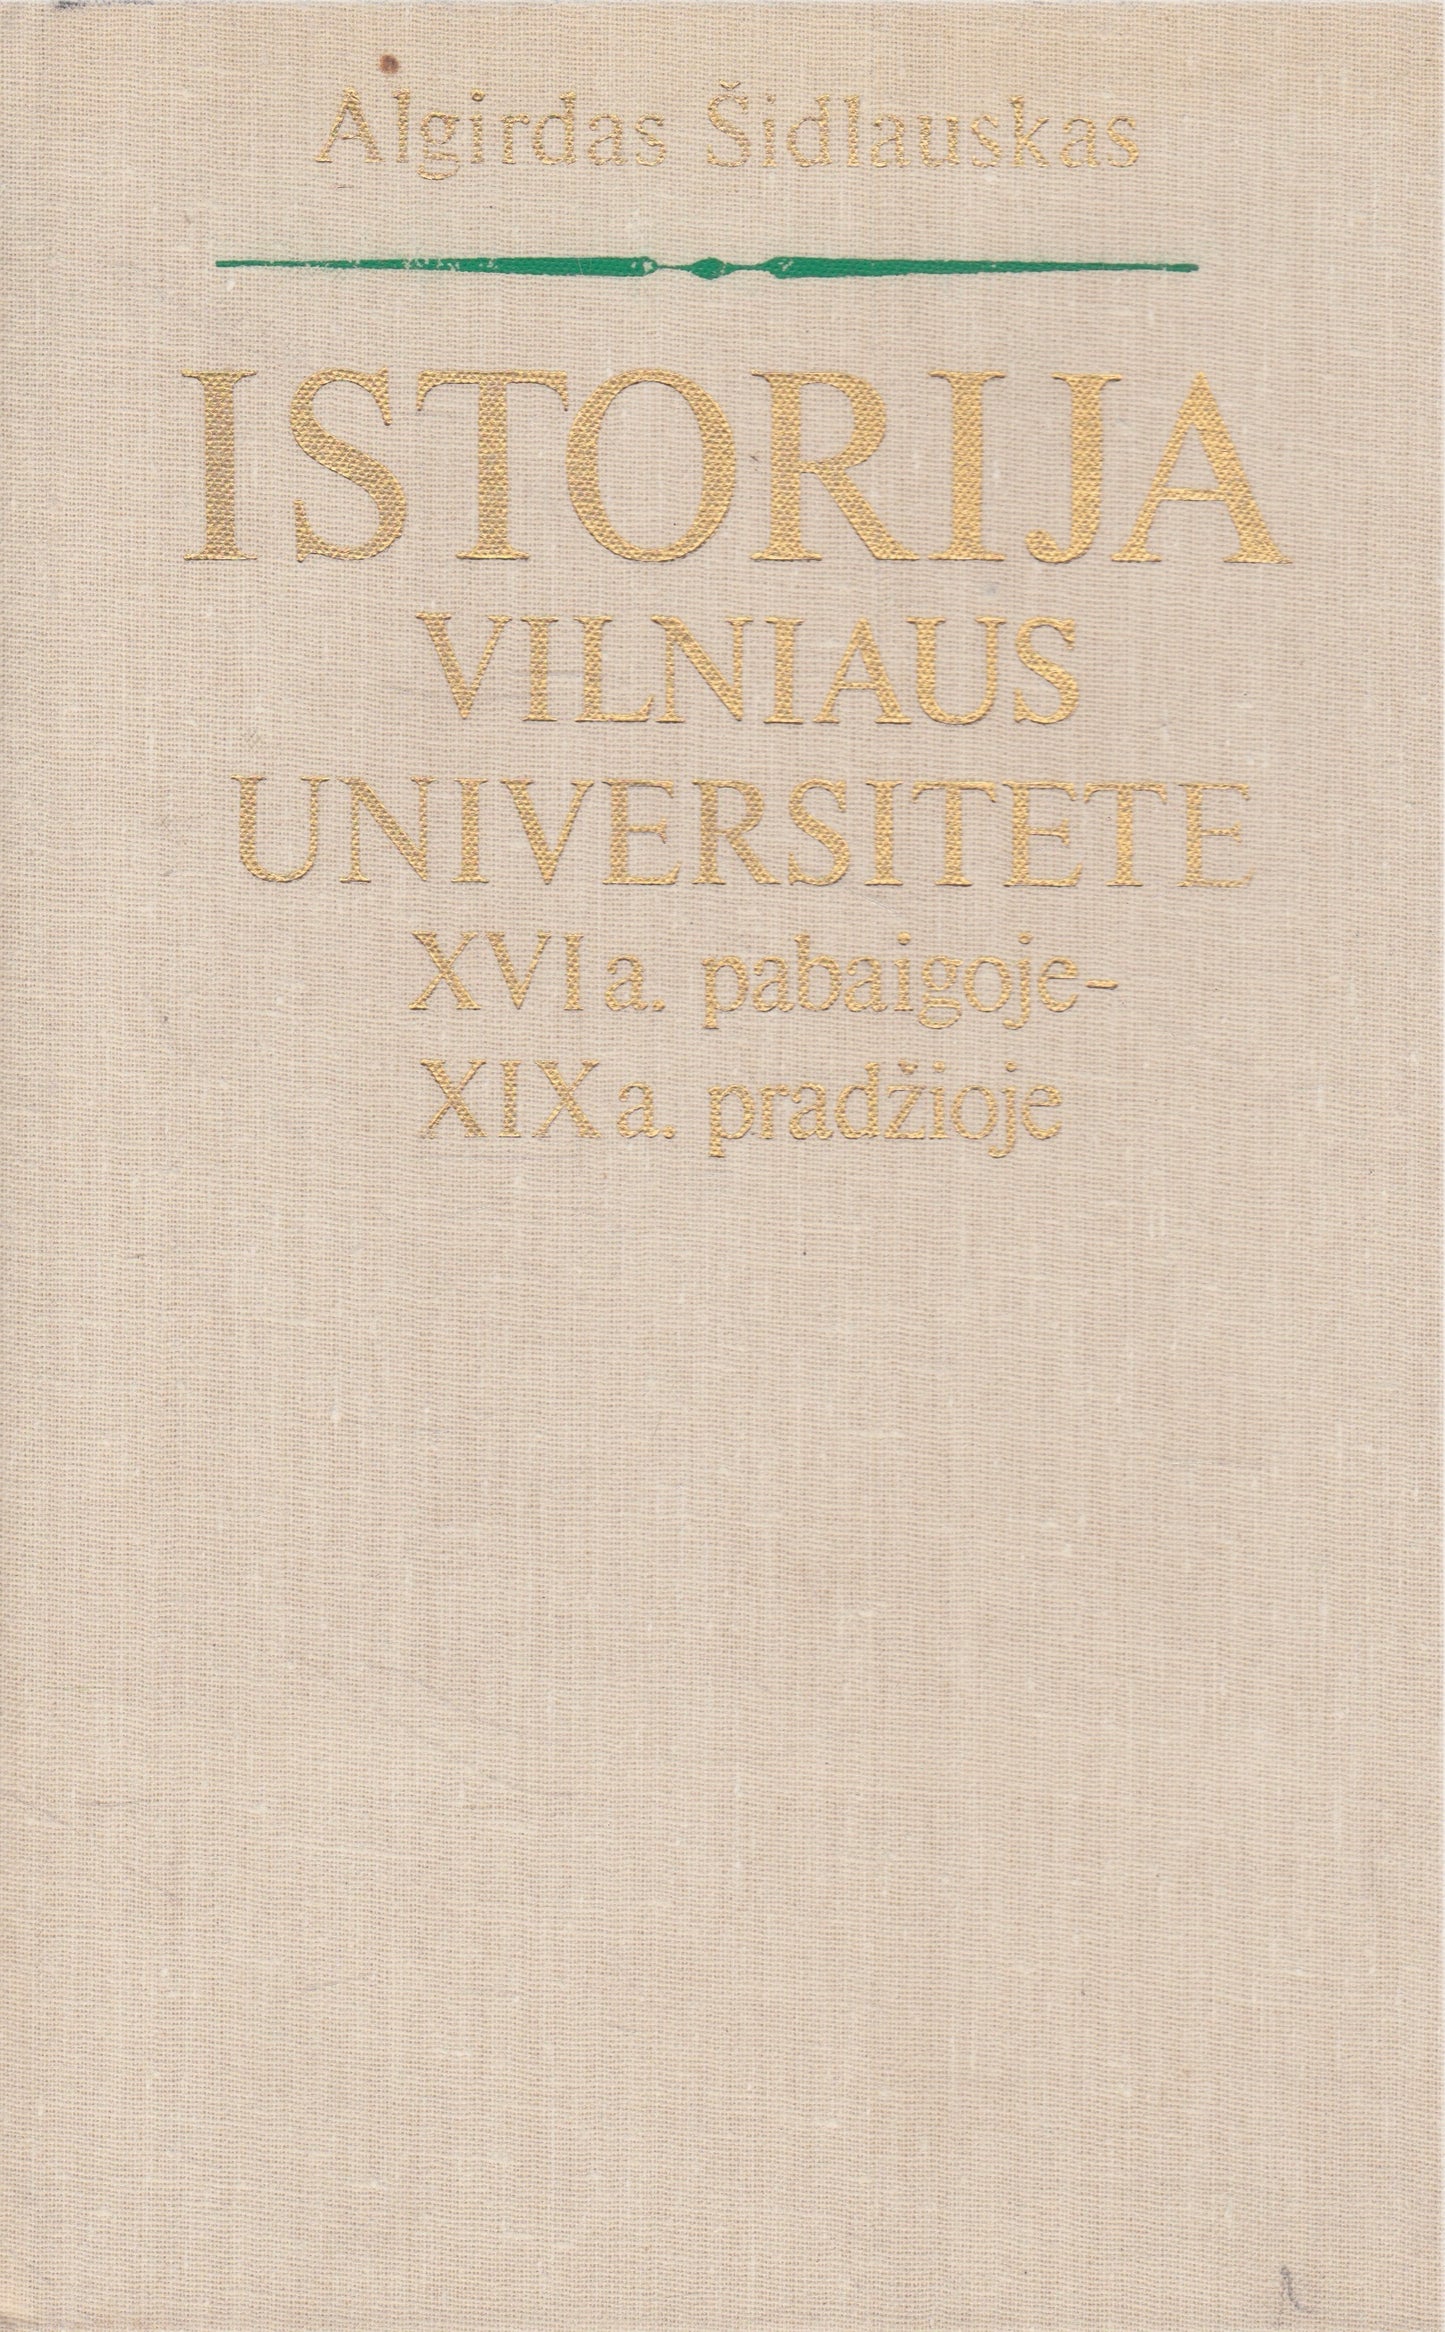 Algirdas Šidlauskas - Istorija Vilniaus universitete XVIa. pabaigoje- XIXa. pradžioje